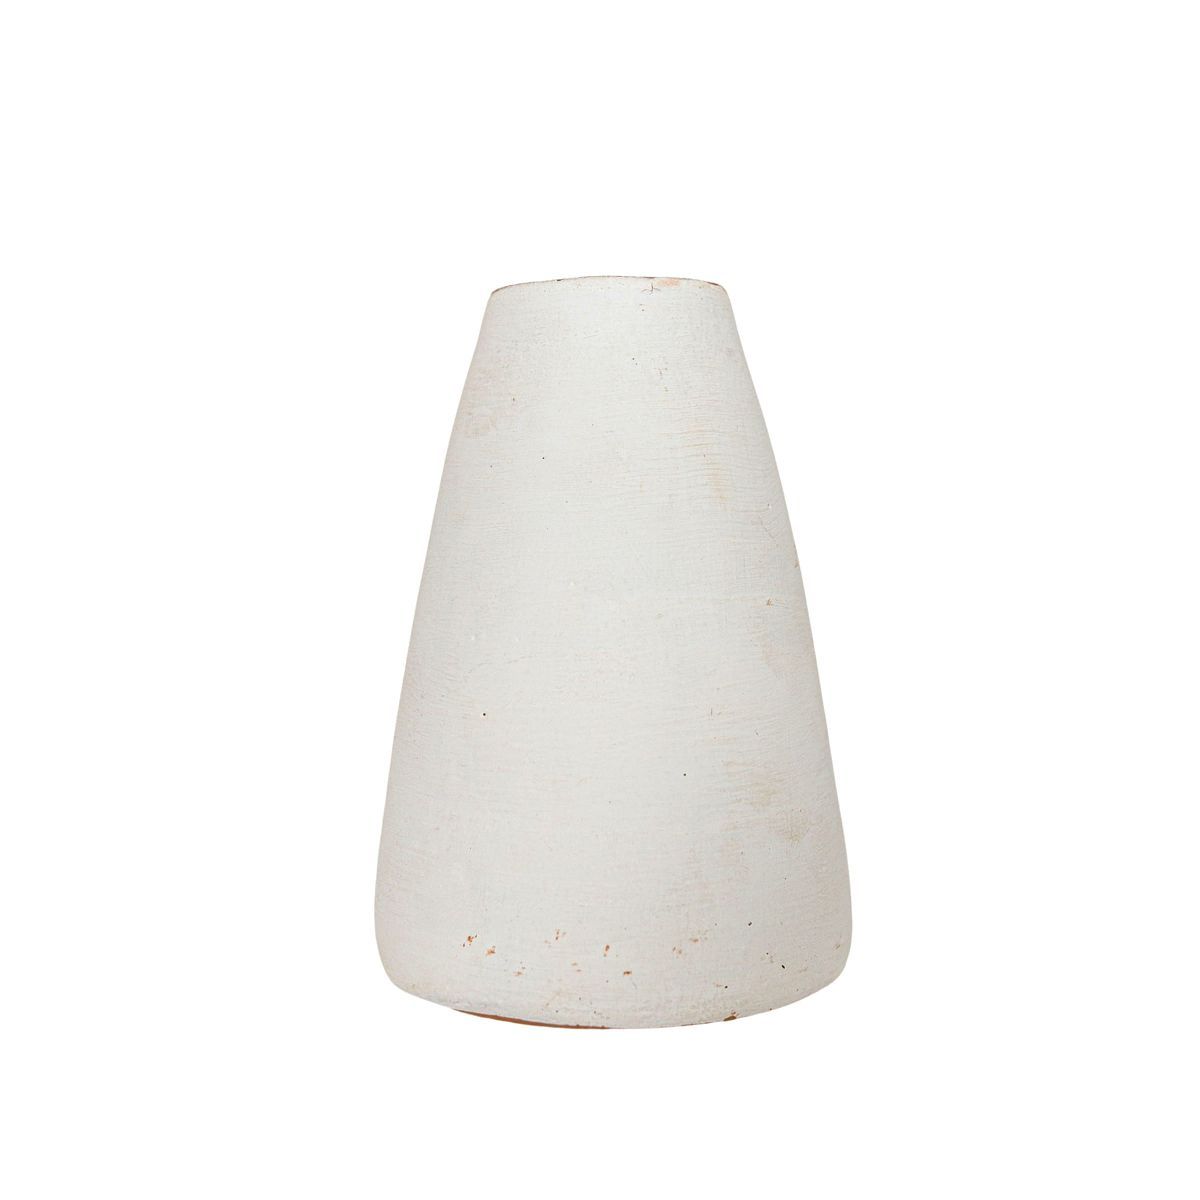 White Terracotta Tapered Bud Vase by Foreside Home & Garden | Target